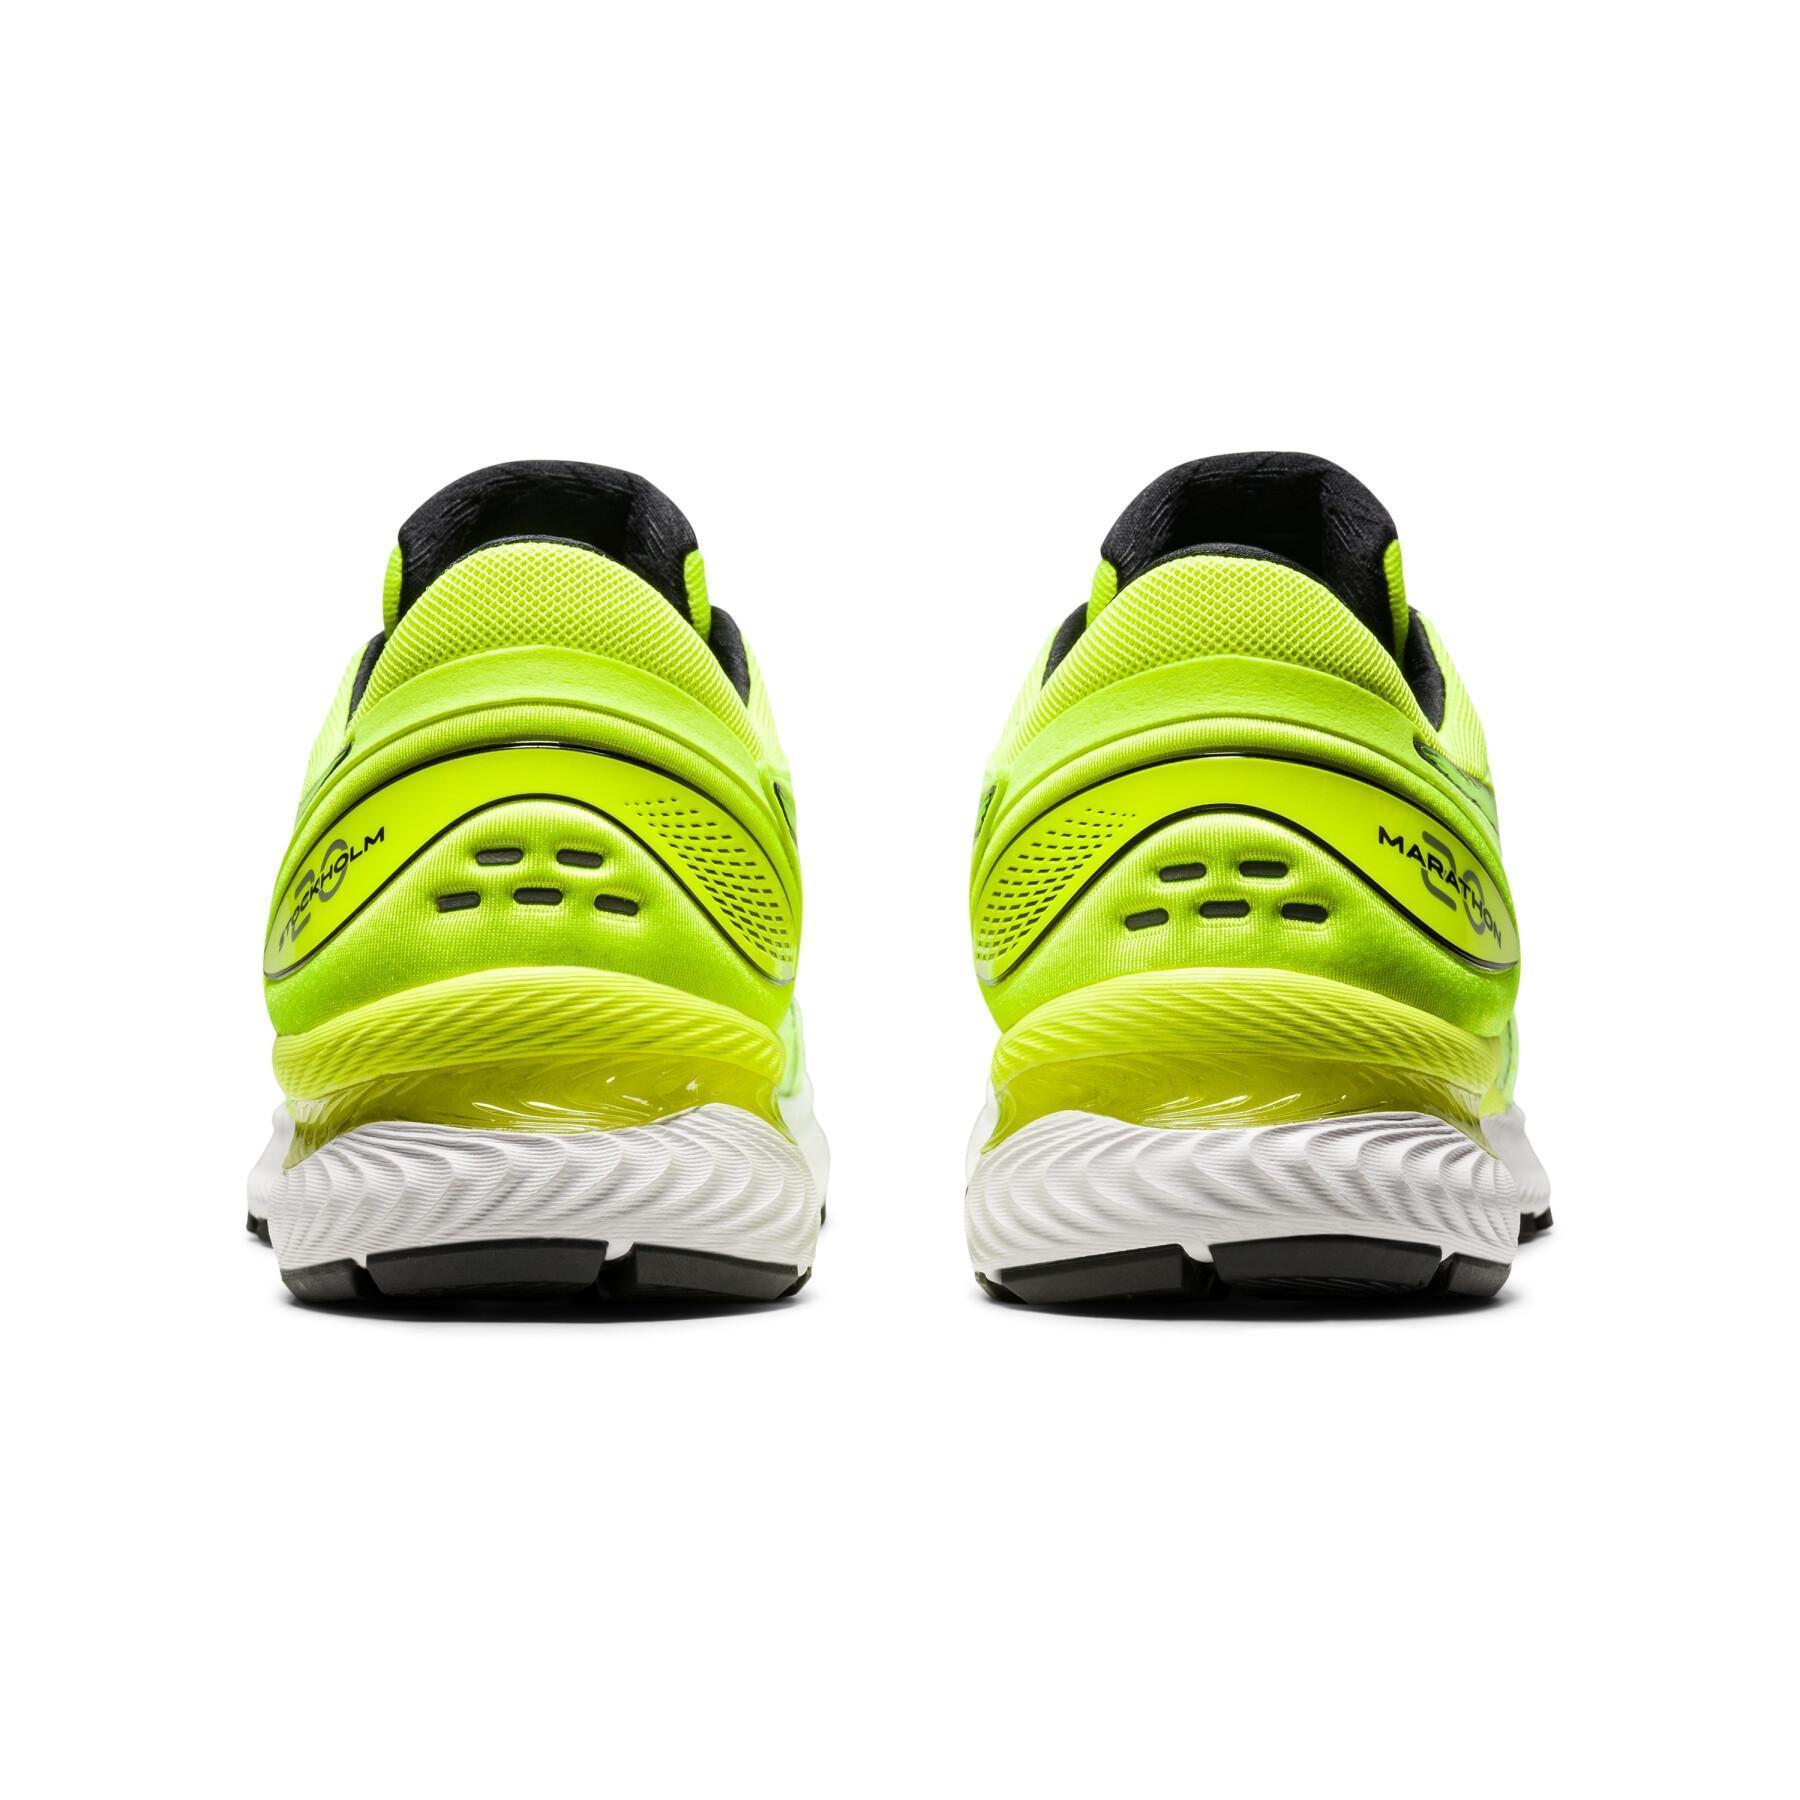 Schuhe Asics Gel-Nimbus 22